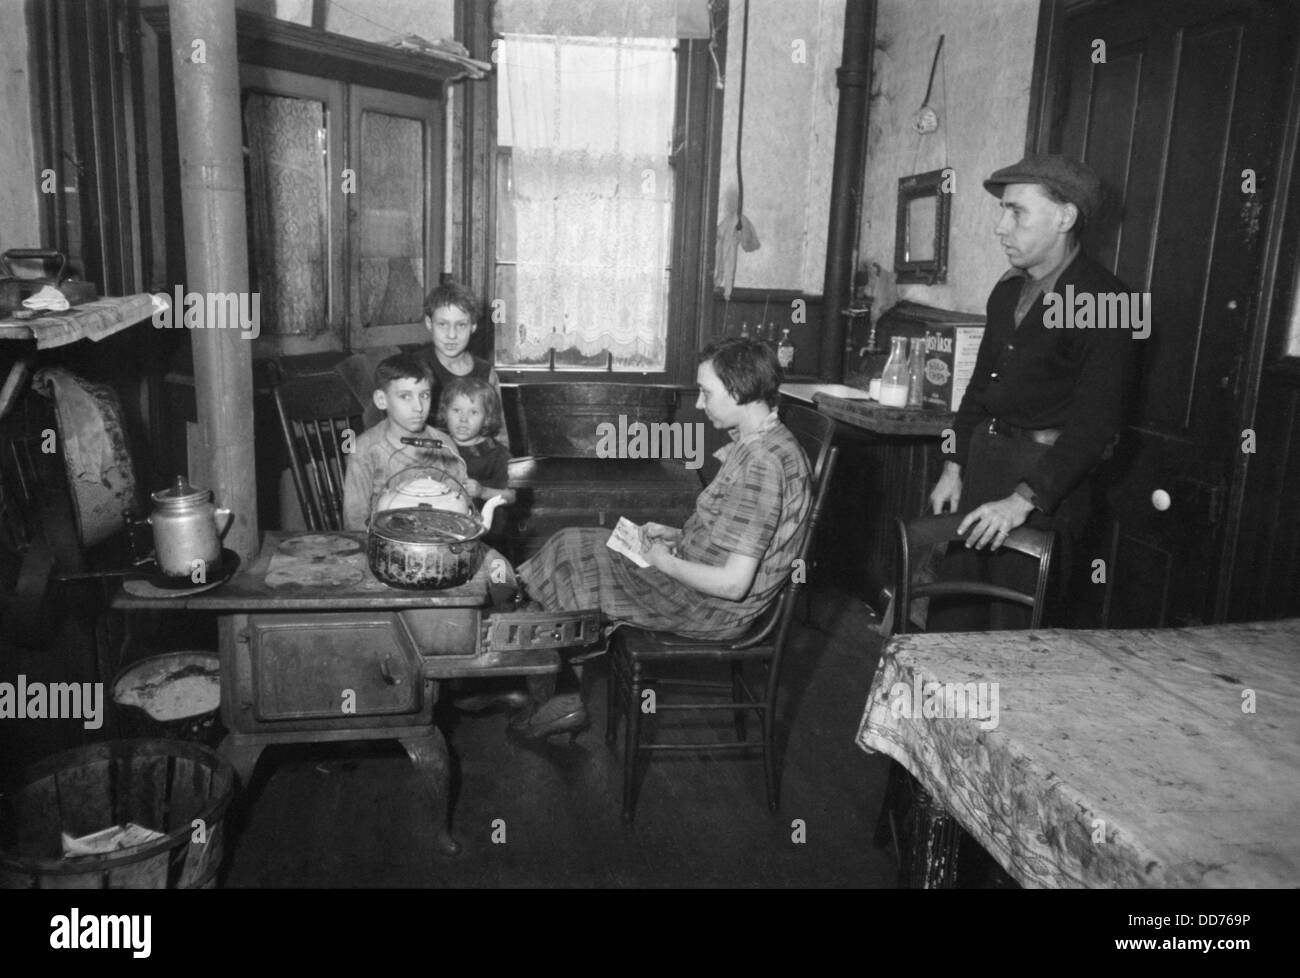 Famiglia nei loro tenement cucina, Hamilton Co., Ohio, dicembre 1935. Foto di Carl Mydans. (BSLOC 2013 8 10) Foto Stock